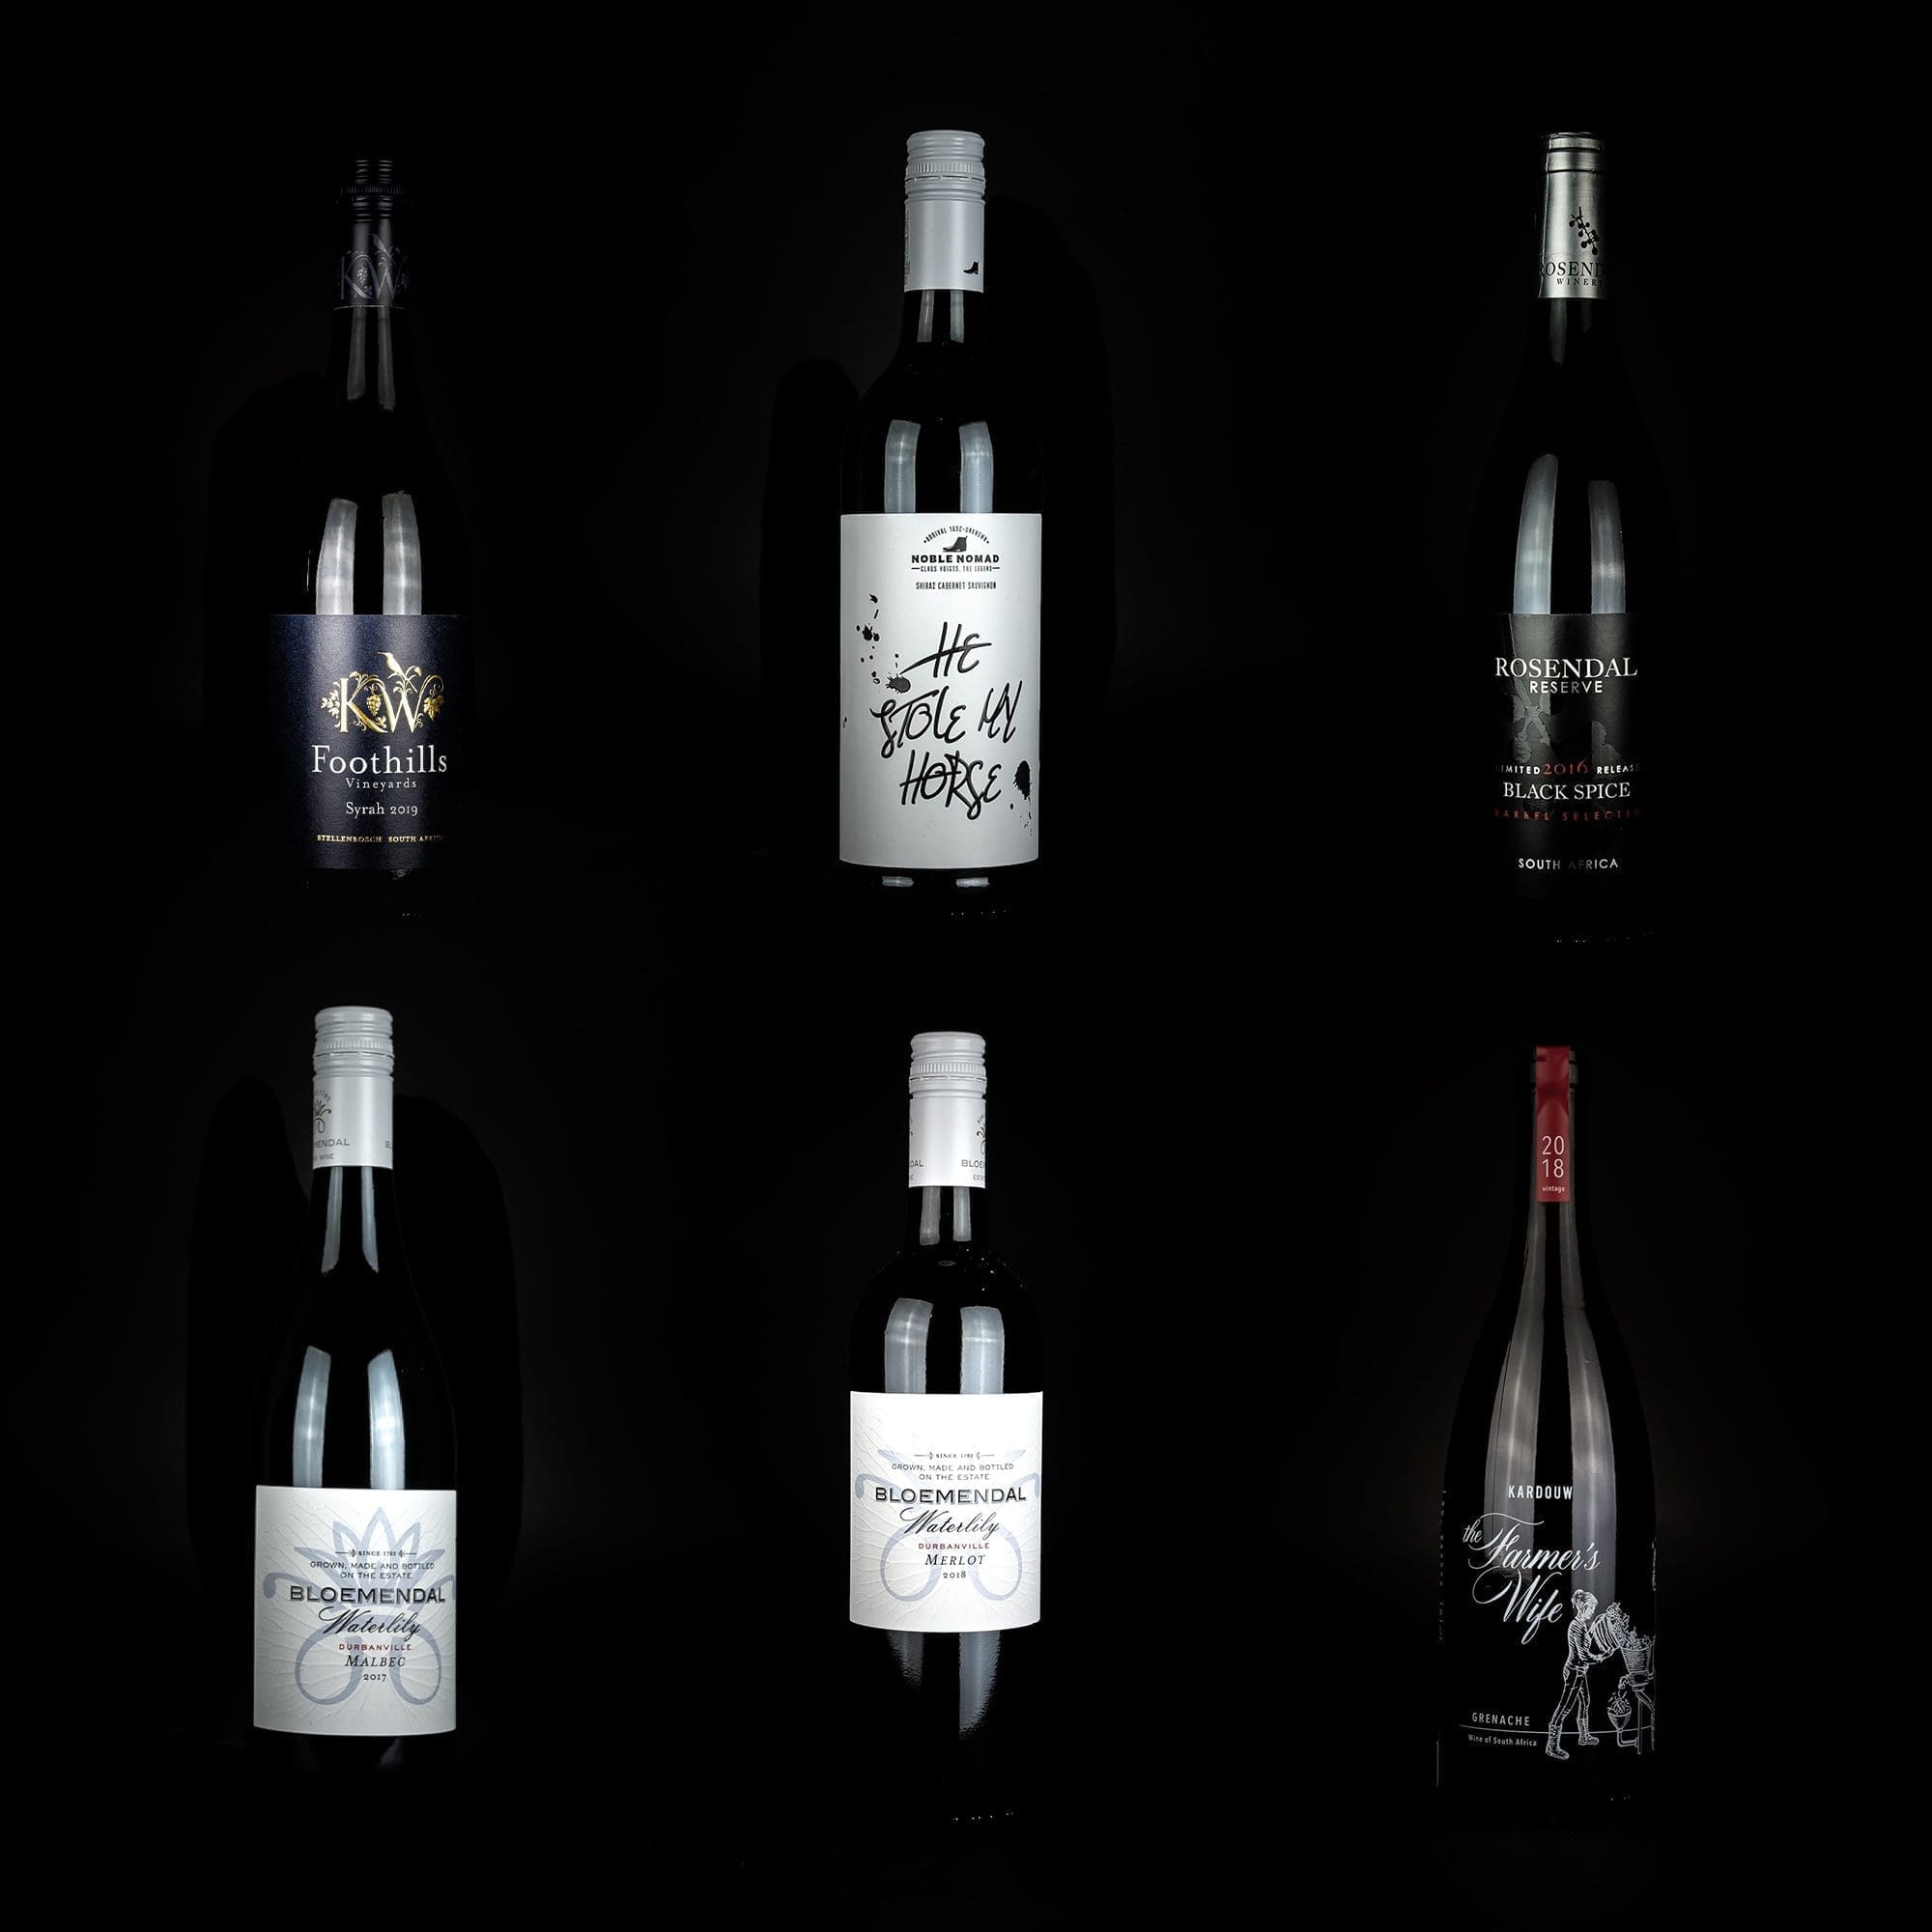 Südafrikanische Weine und Olivenöl - Weine aus Südafrika von Rosendal